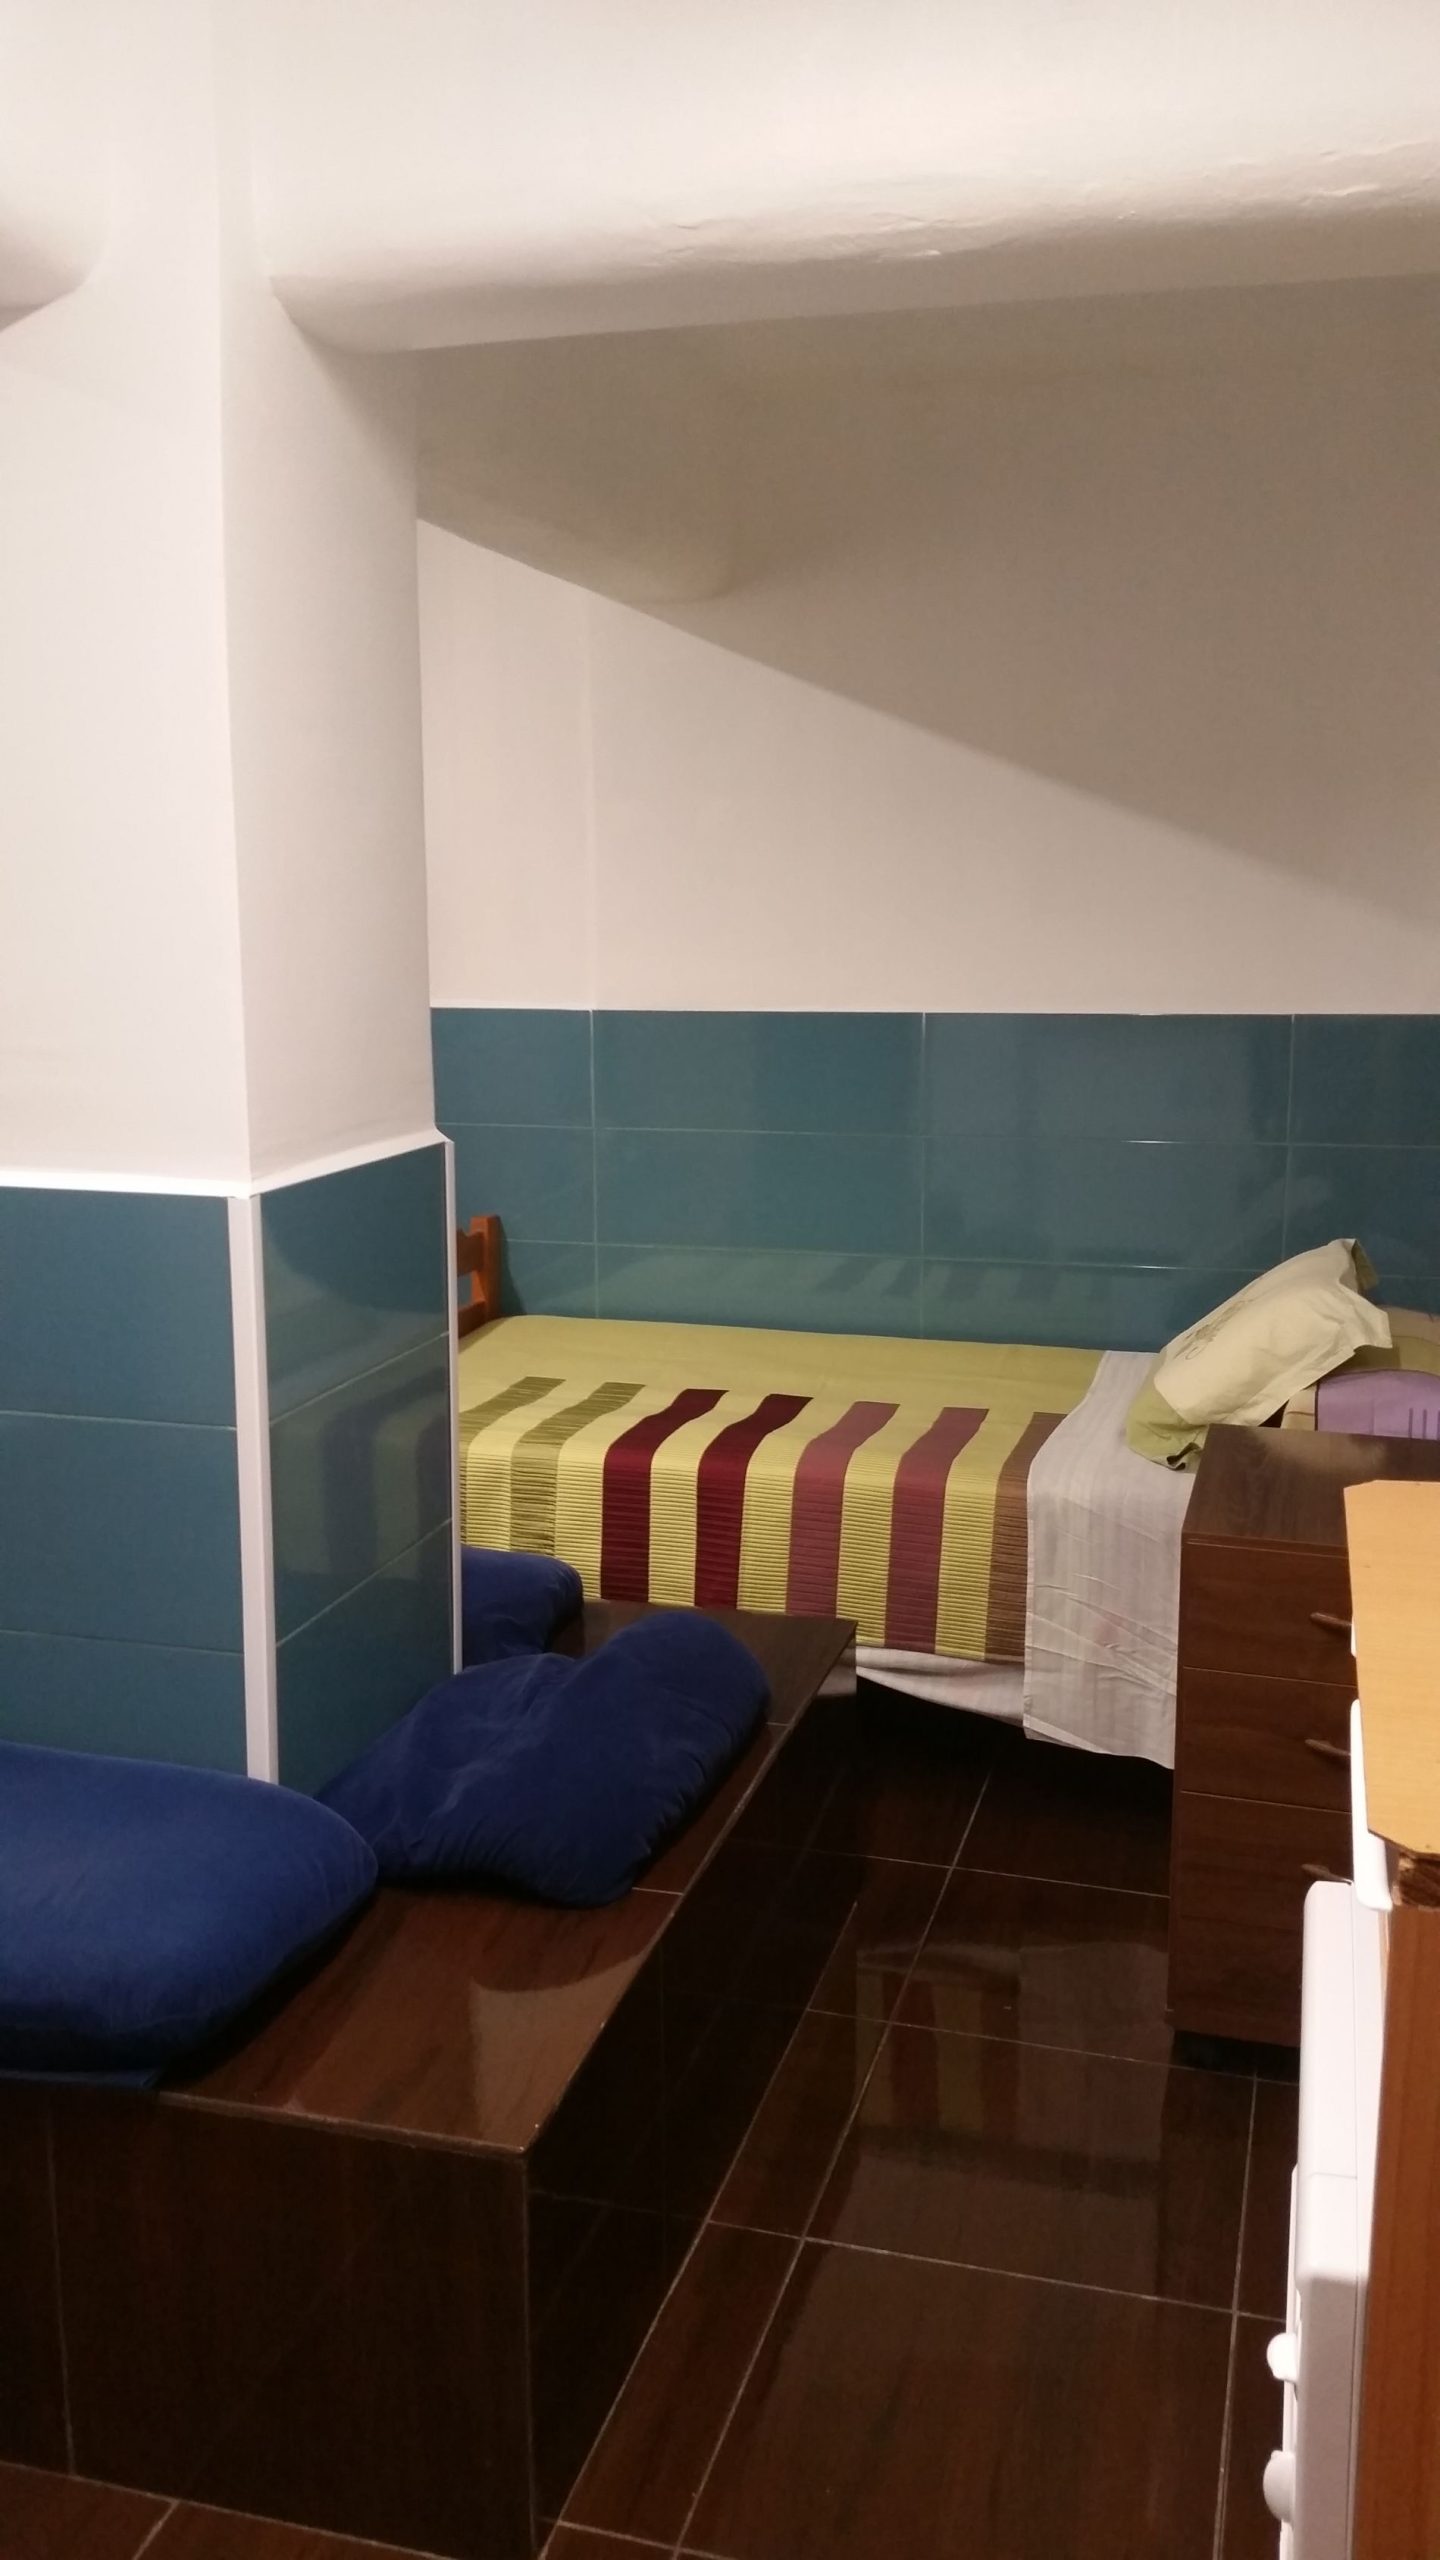 studio for rent in barcelona - bedroom